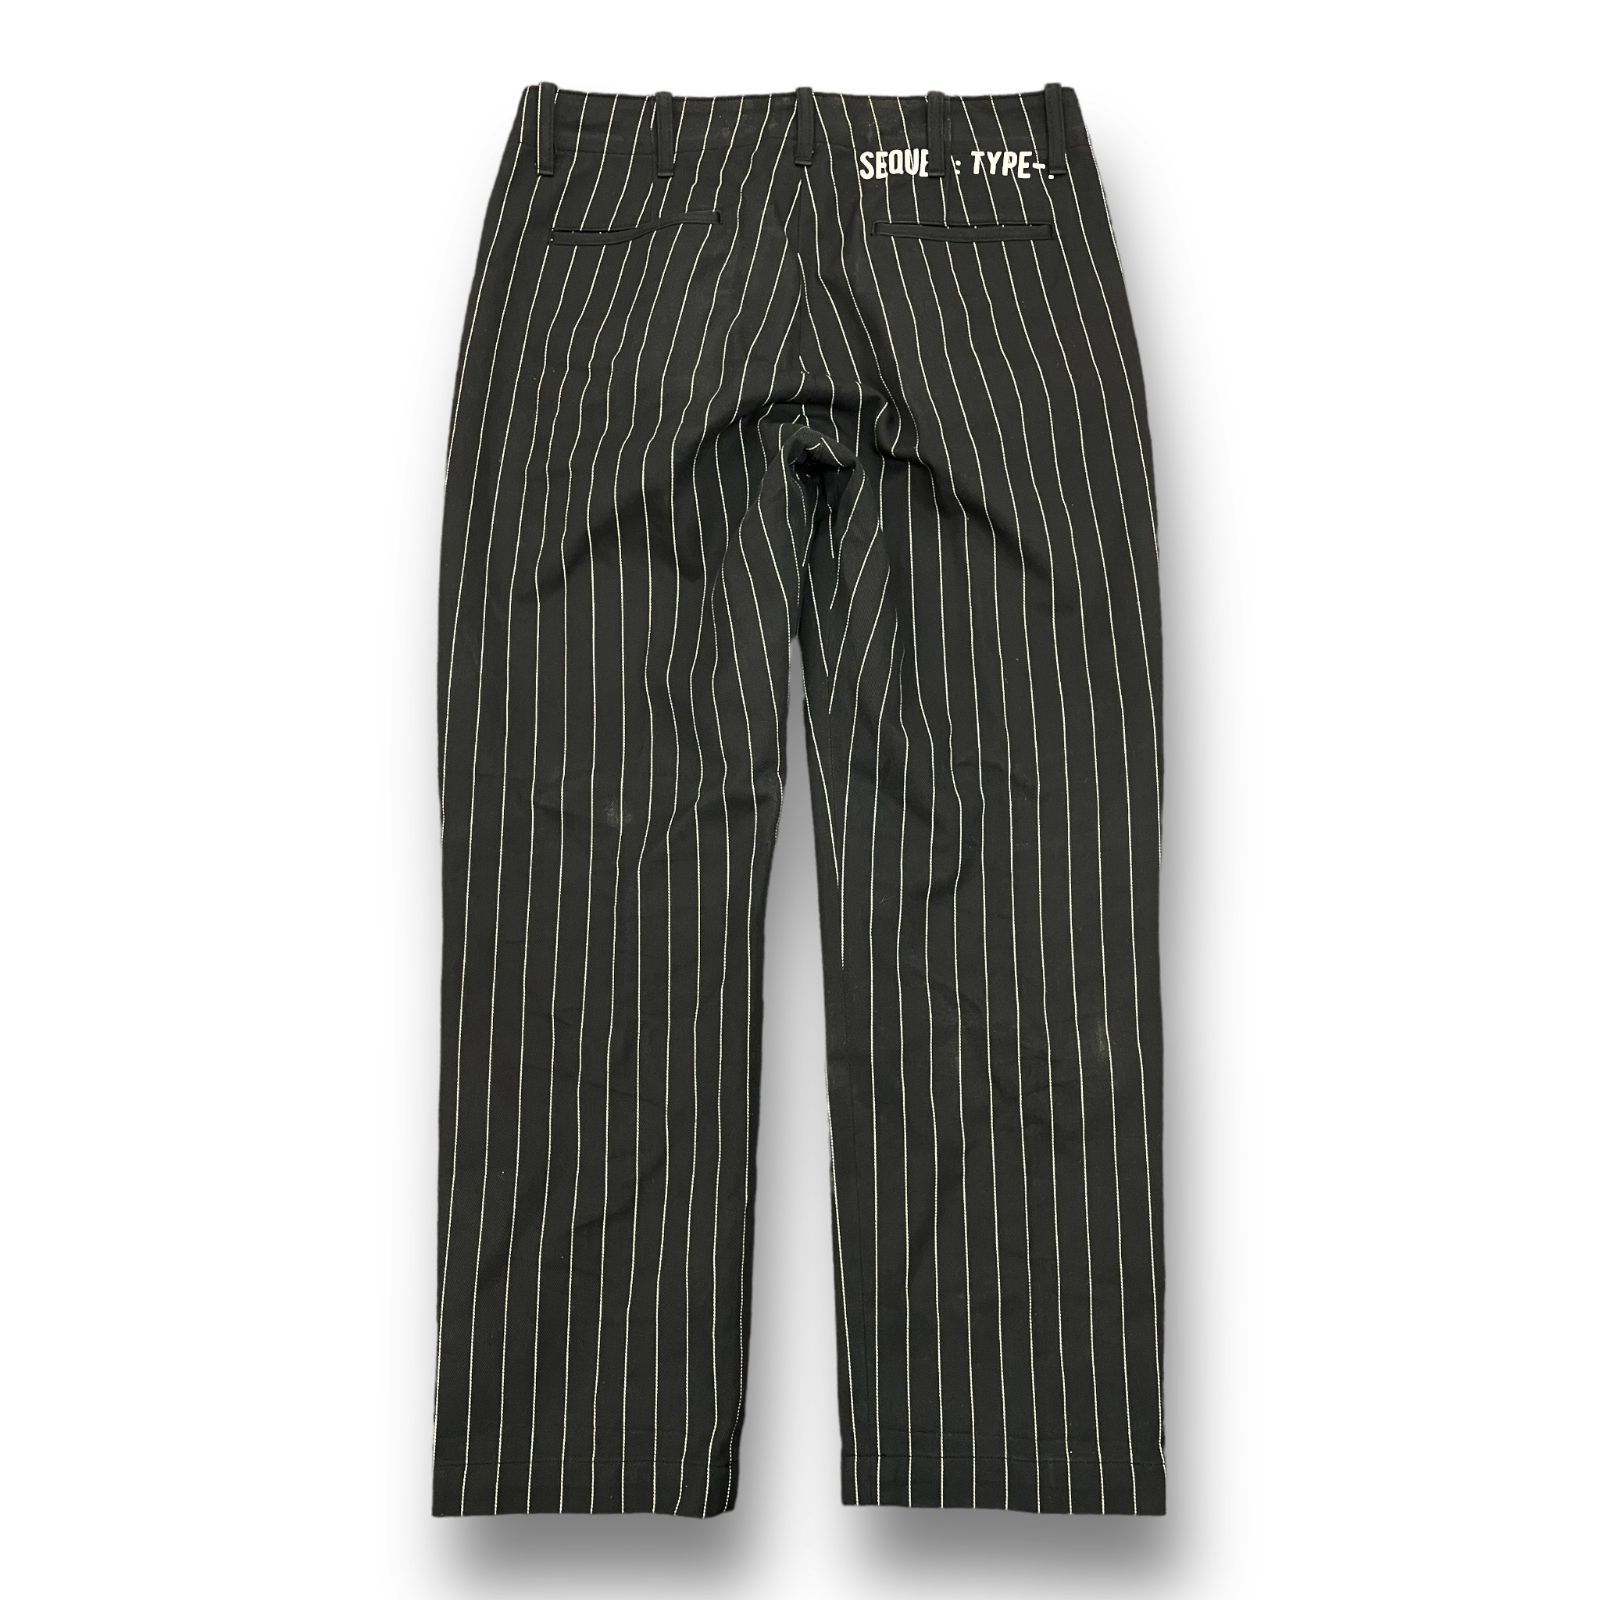 SEQUEL Stripe Chino Pants ストライプチノパンツ TYPE-F シークエル 